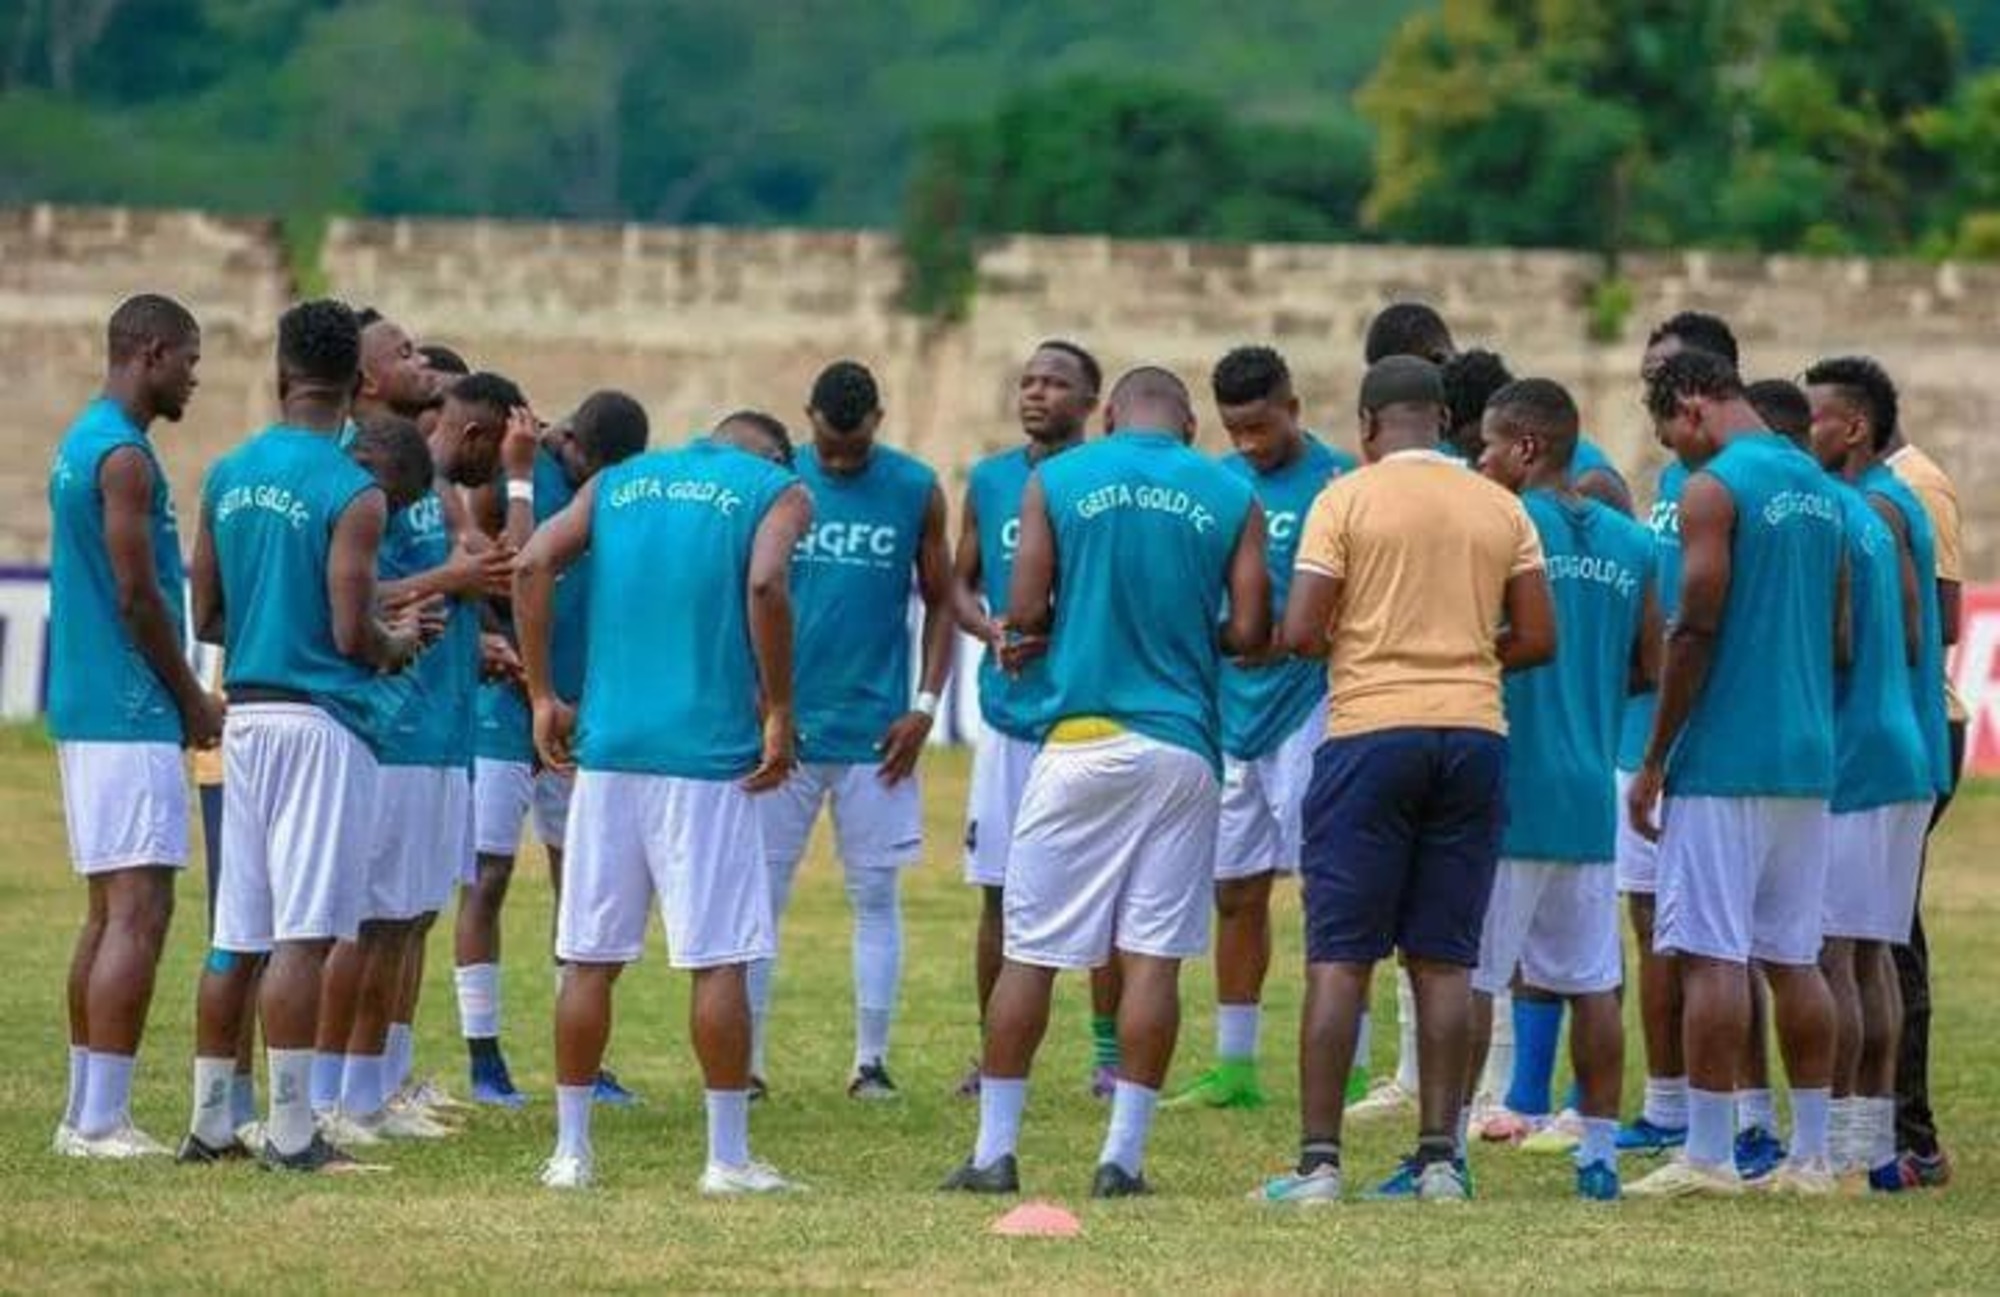 Matokeo Polisi Tanzania vs Geita Gold 25 June 2022 Results